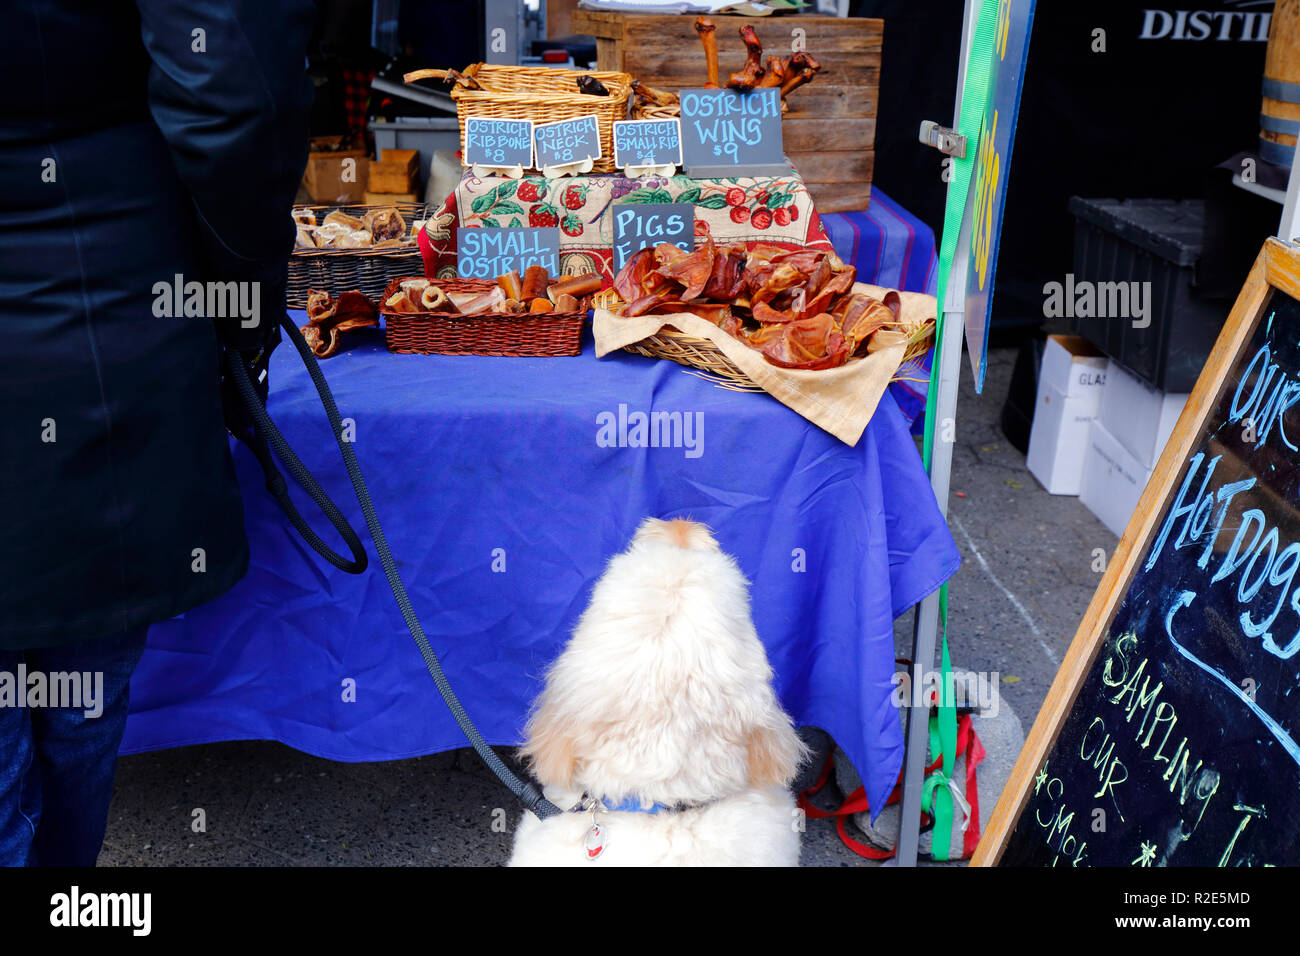 Un chien se montre à une exposition de gâteries artisanales pour chiens sur un marché agricole à nyc.Un chien dans un Greenmarket de New York City chez un vendeur de friandises pour chiens Banque D'Images